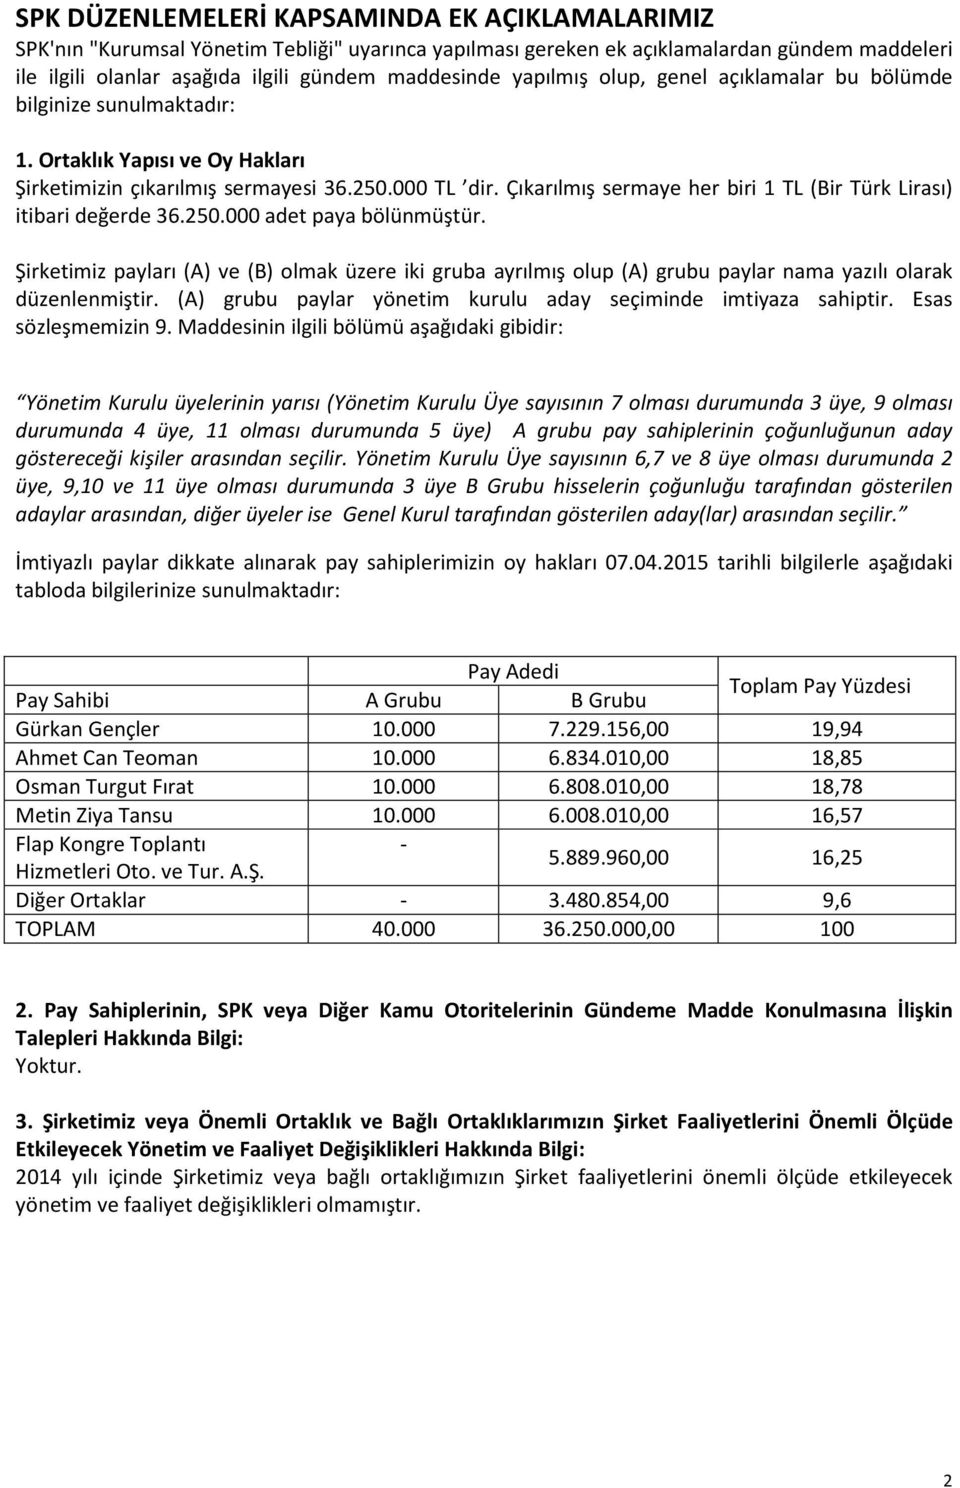 Çıkarılmış sermaye her biri 1 TL (Bir Türk Lirası) itibari değerde 36.250.000 adet paya bölünmüştür.